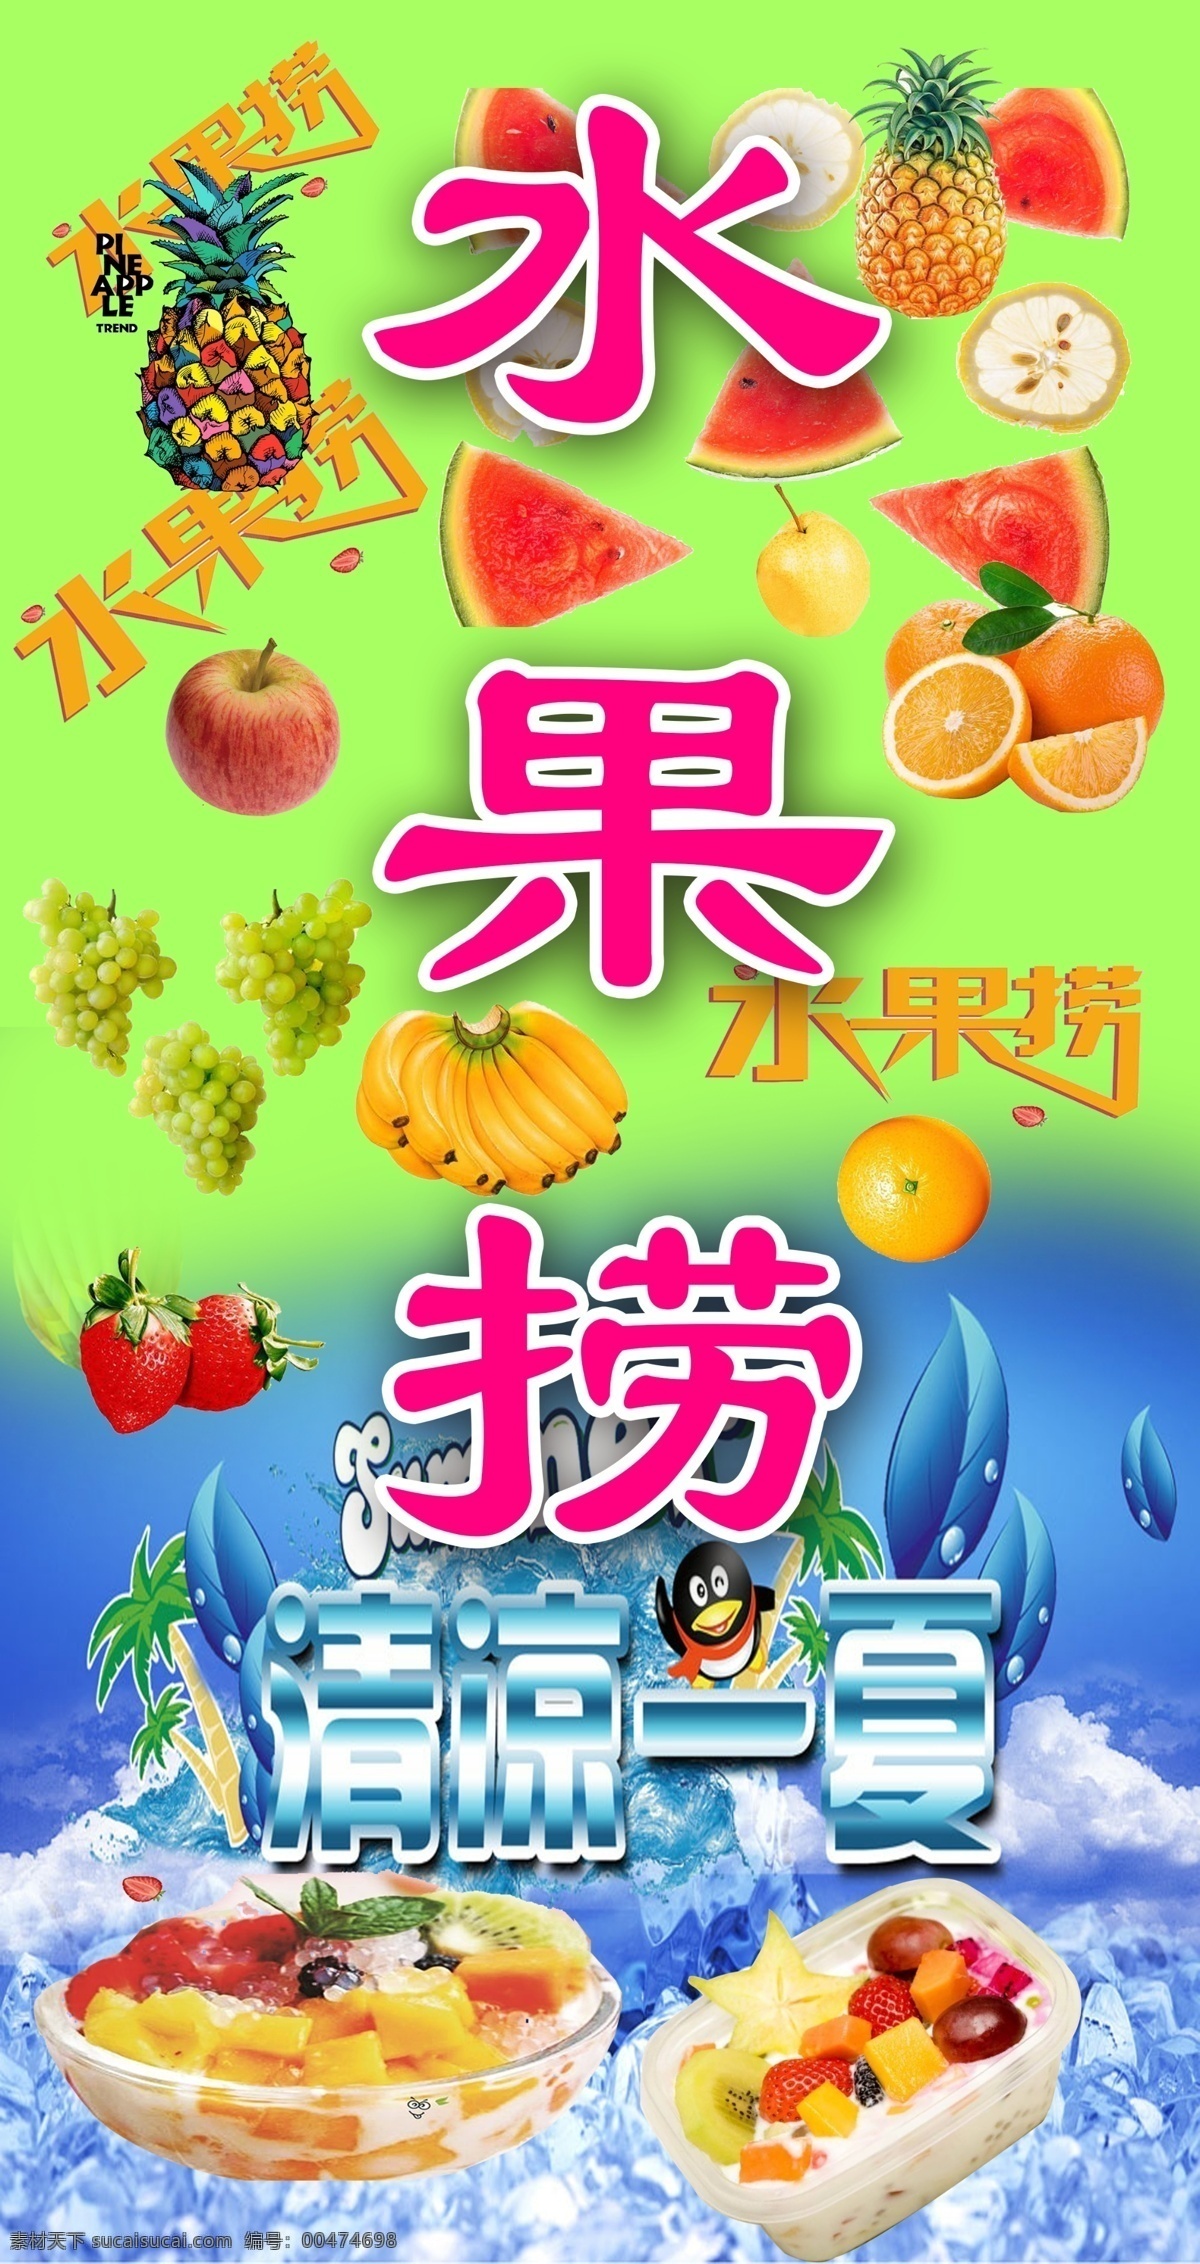 水果捞海报 水果 清凉一夏 冷饮 宣传单 食品 价目表 背景 展板 水果捞 彩页 海报 室内广告设计